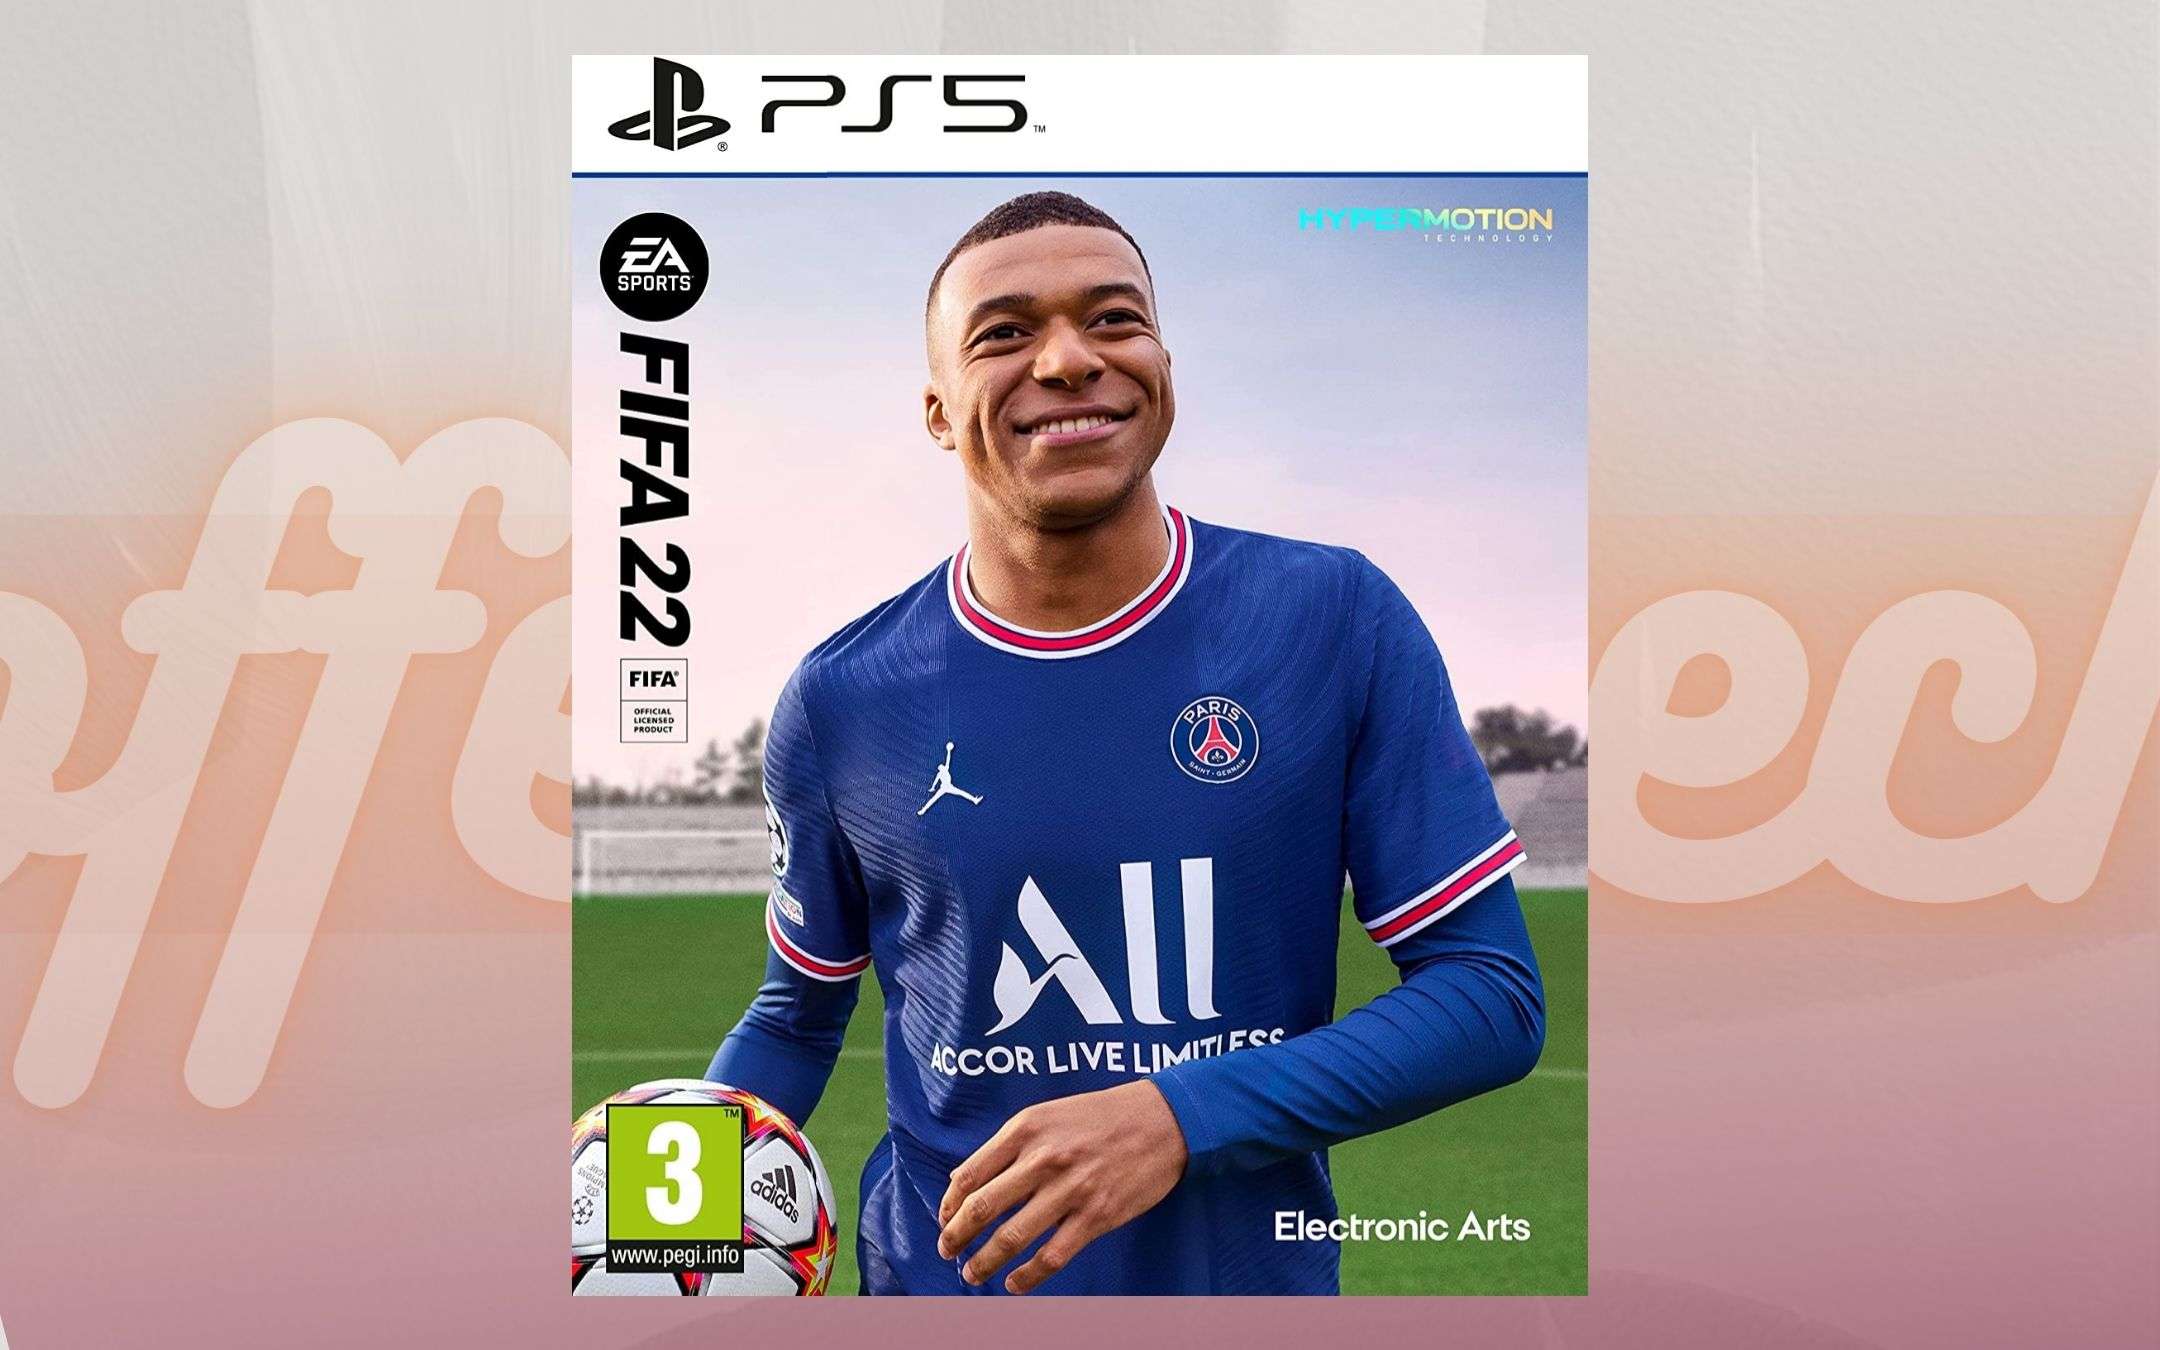 FIFA 22 per PS5 è già in offerta su Amazon, con ben 11€ di sconto